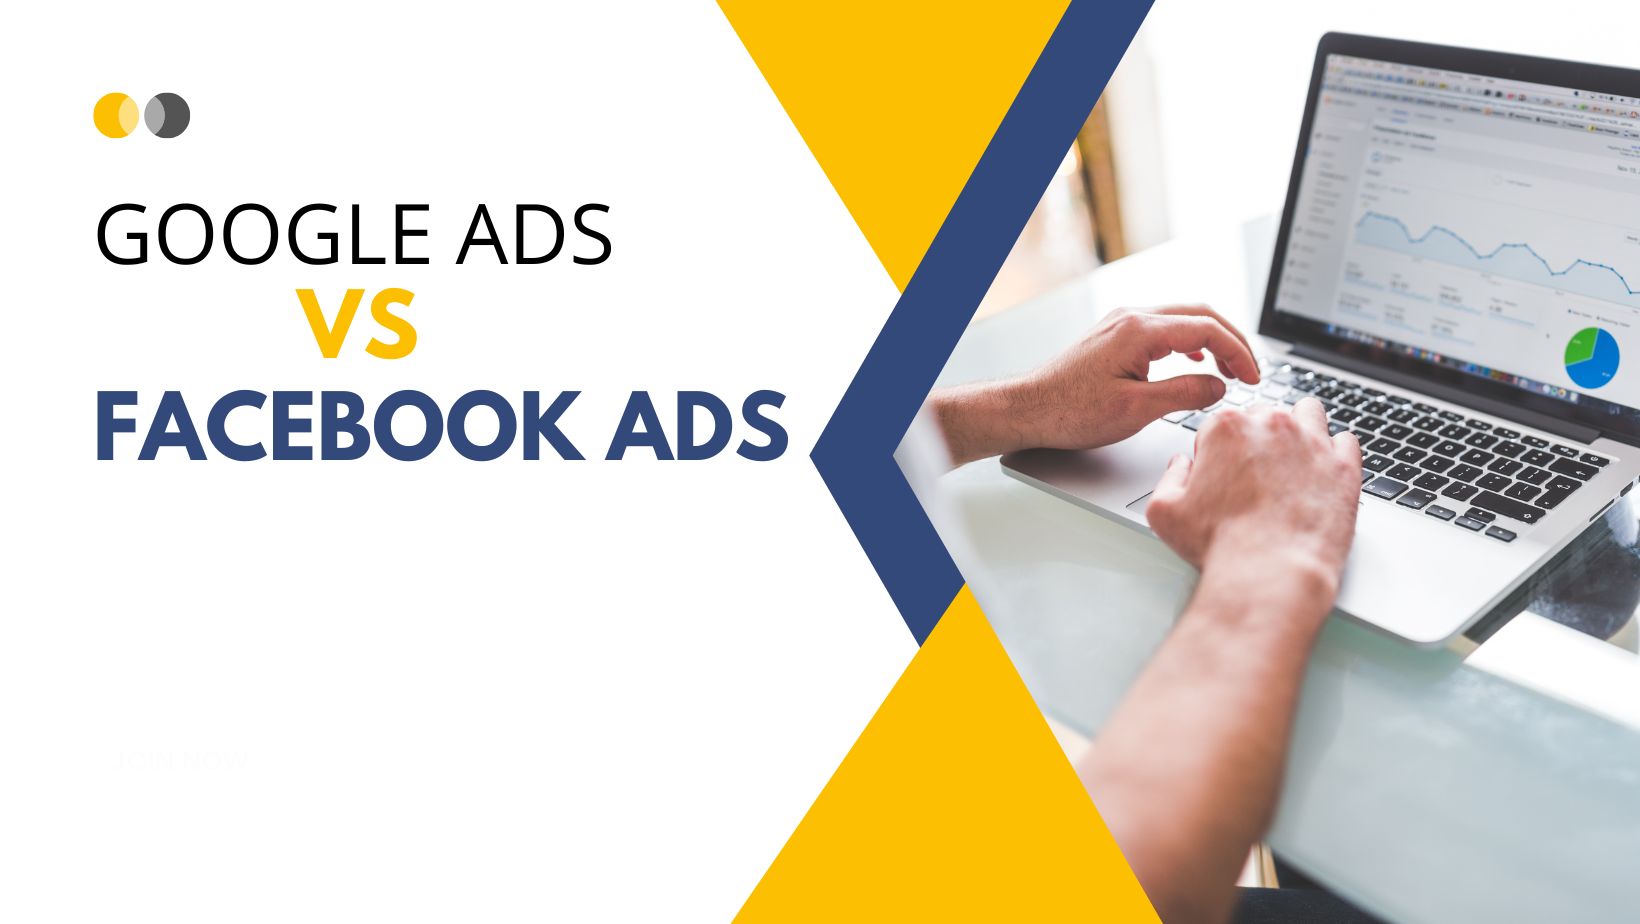 Google ads vs Facebook ads